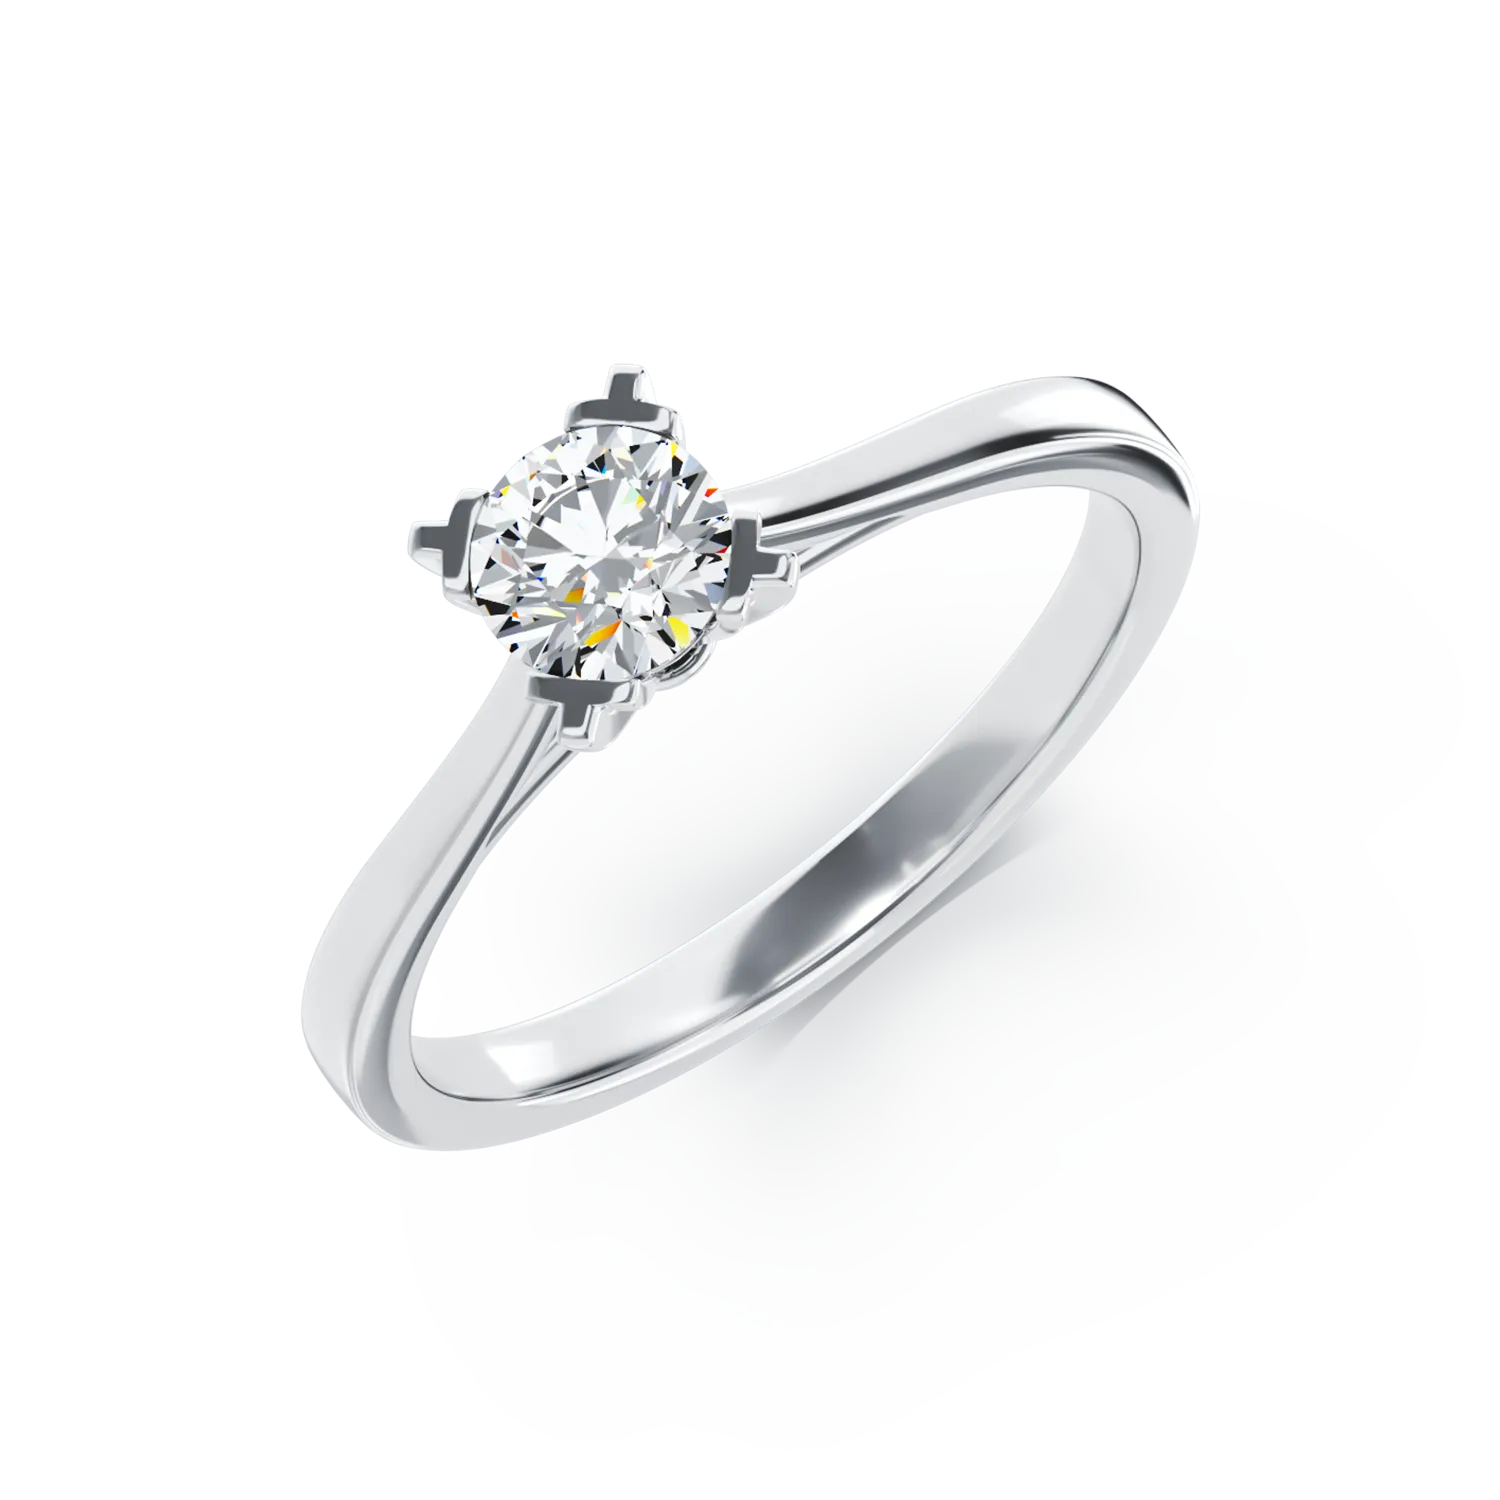 Inel de logodna din aur alb de 18K cu un diamant solitaire de 0.26ct